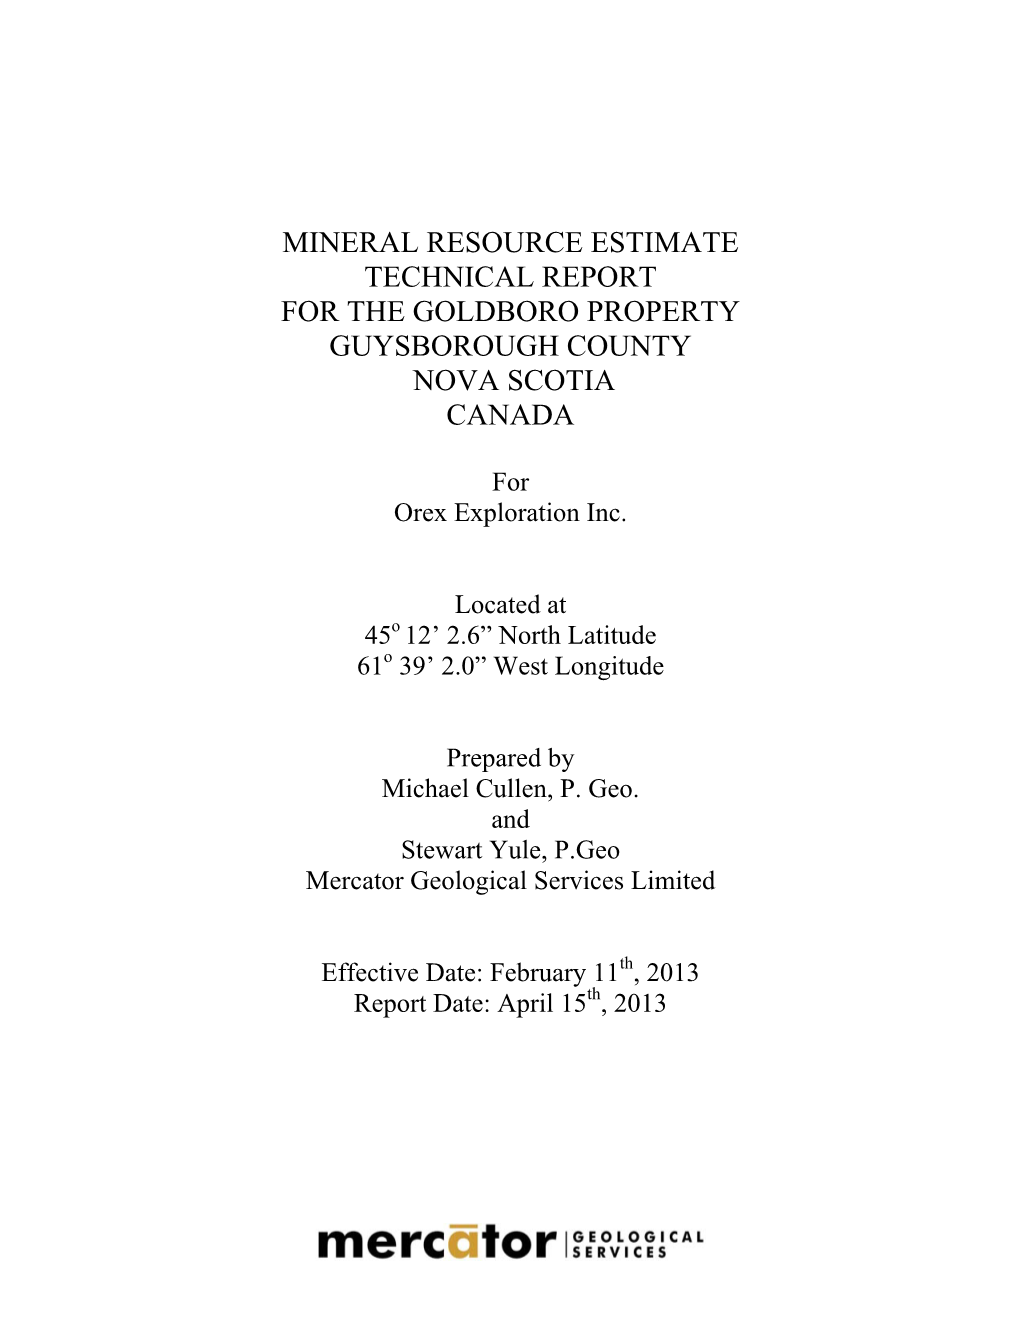 Mineral Resource Estimate Technical Report for the Goldboro Property Guysborough County Nova Scotia Canada